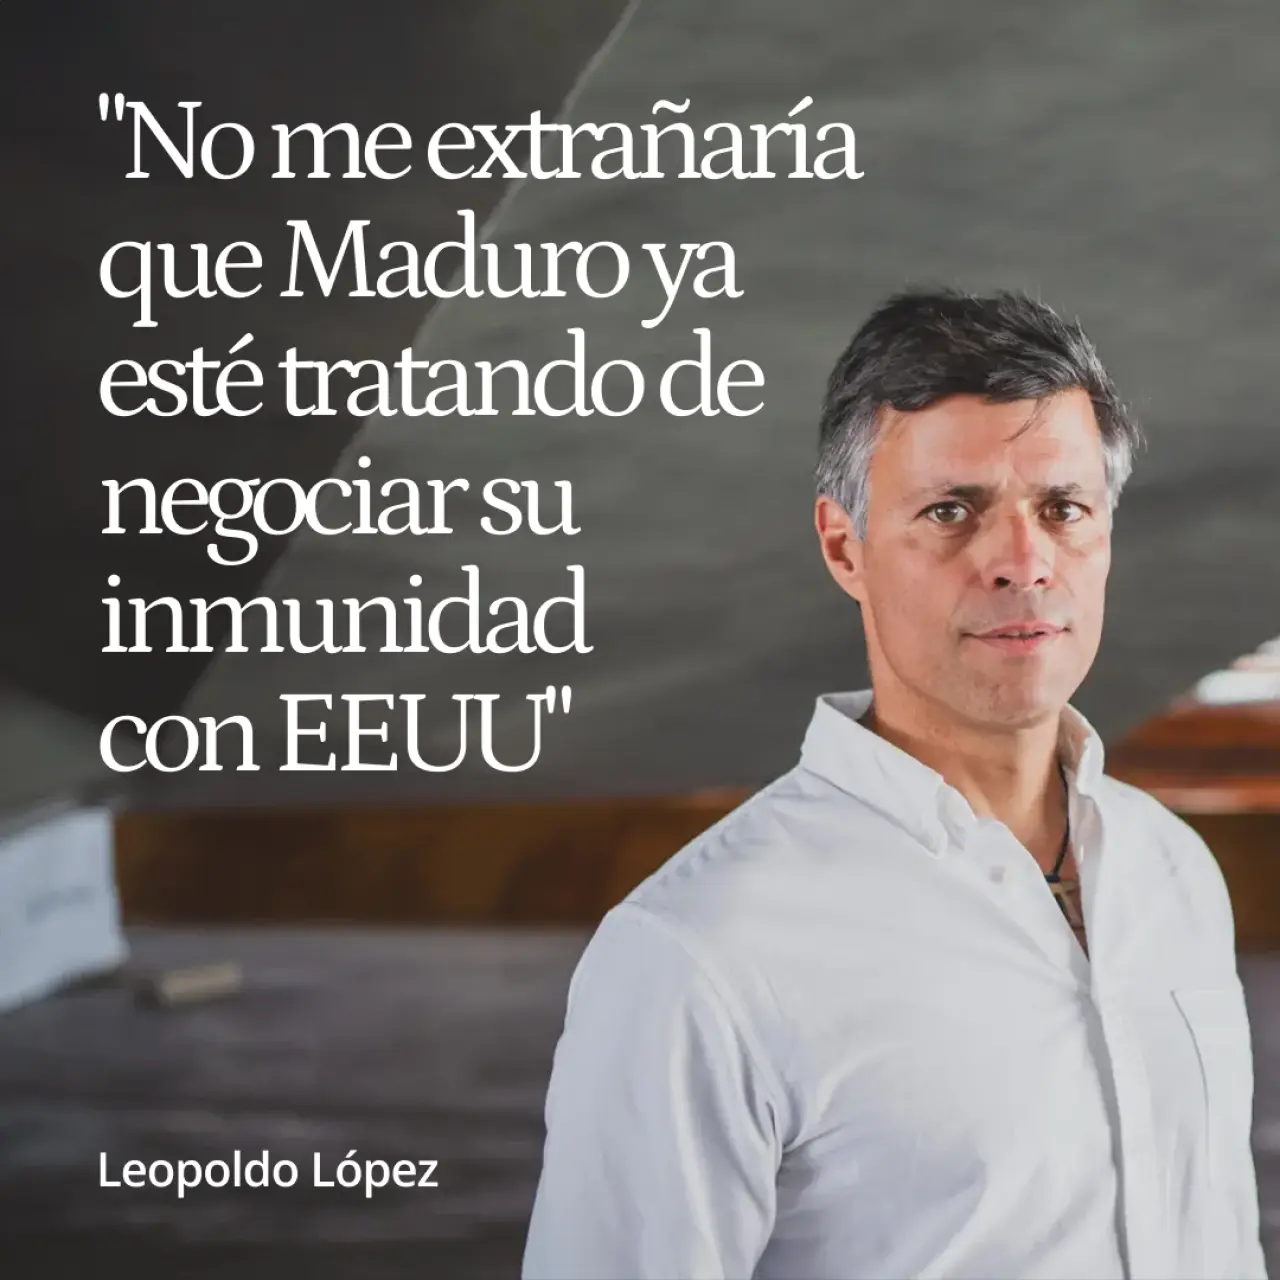 Leopoldo López: "No me extrañaría que Maduro ya esté tratando de negociar su inmunidad con EEUU"